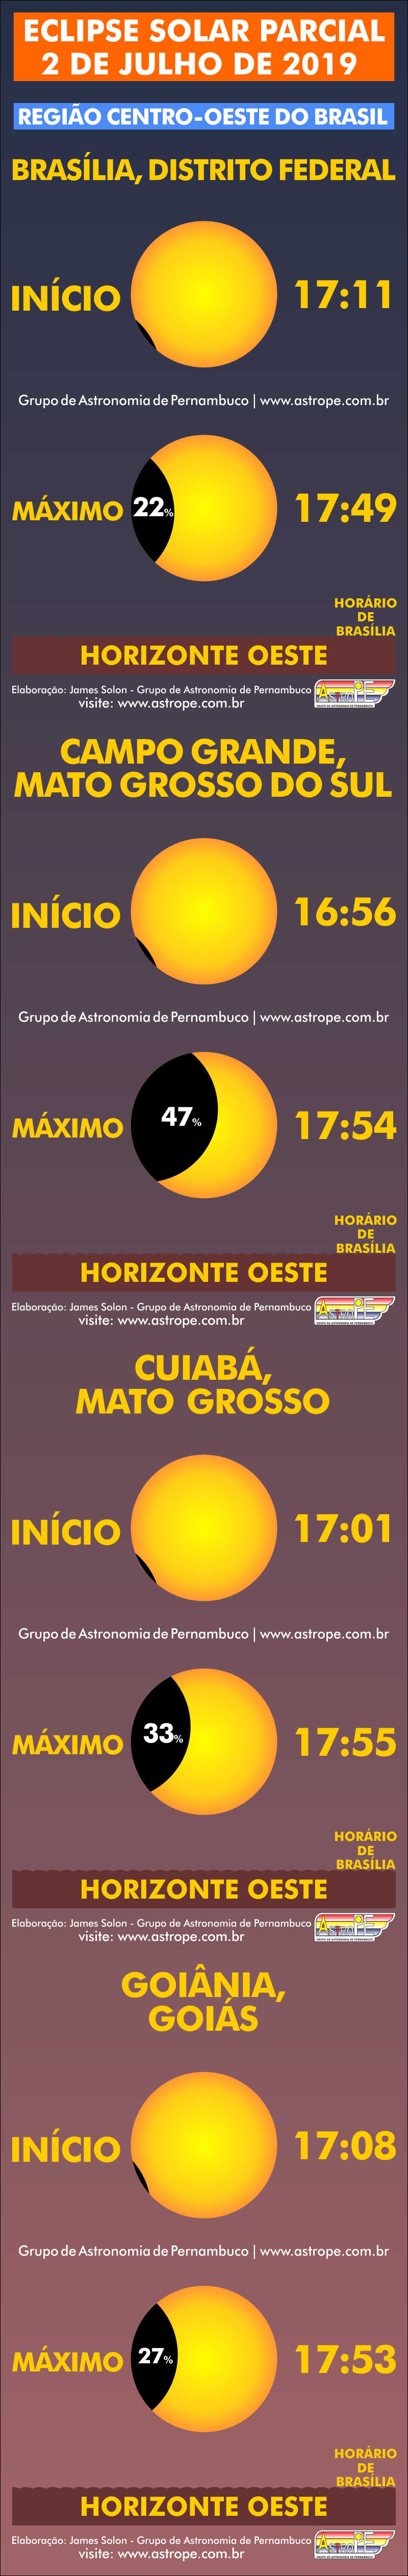 Horários do Eclipse Solar Parcial de 2 de julho de 2019 no Brasil na Região Centro-Oeste. Crédito: AstroPE.